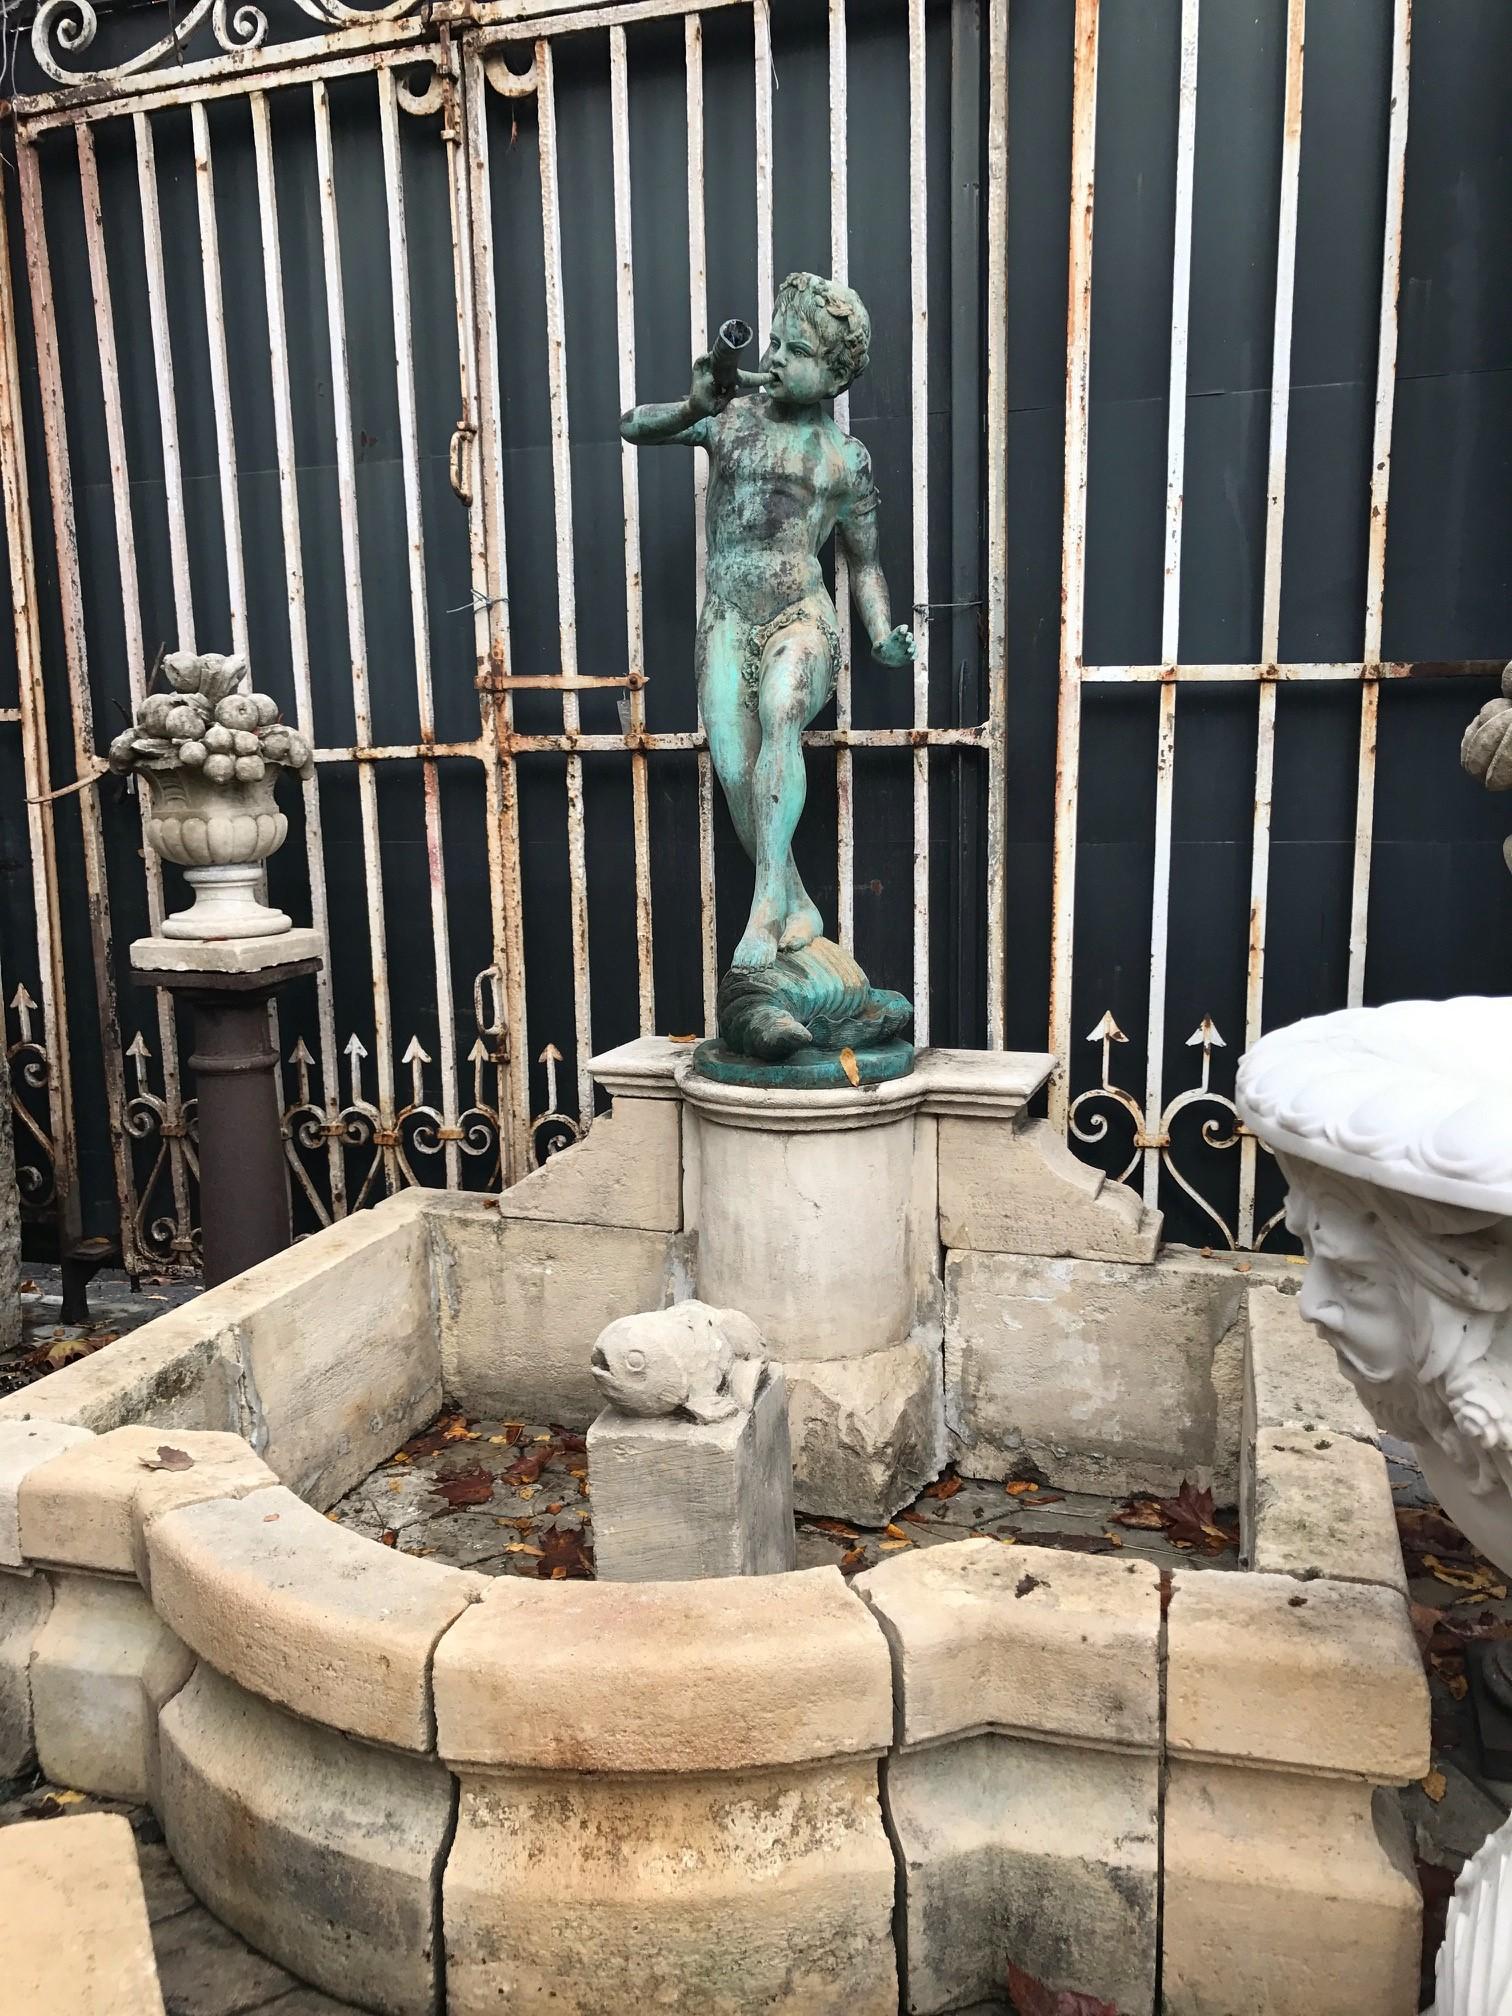 19th Century Bronze Statue Center Fountain Decorative Garden Ornament Spout La 5